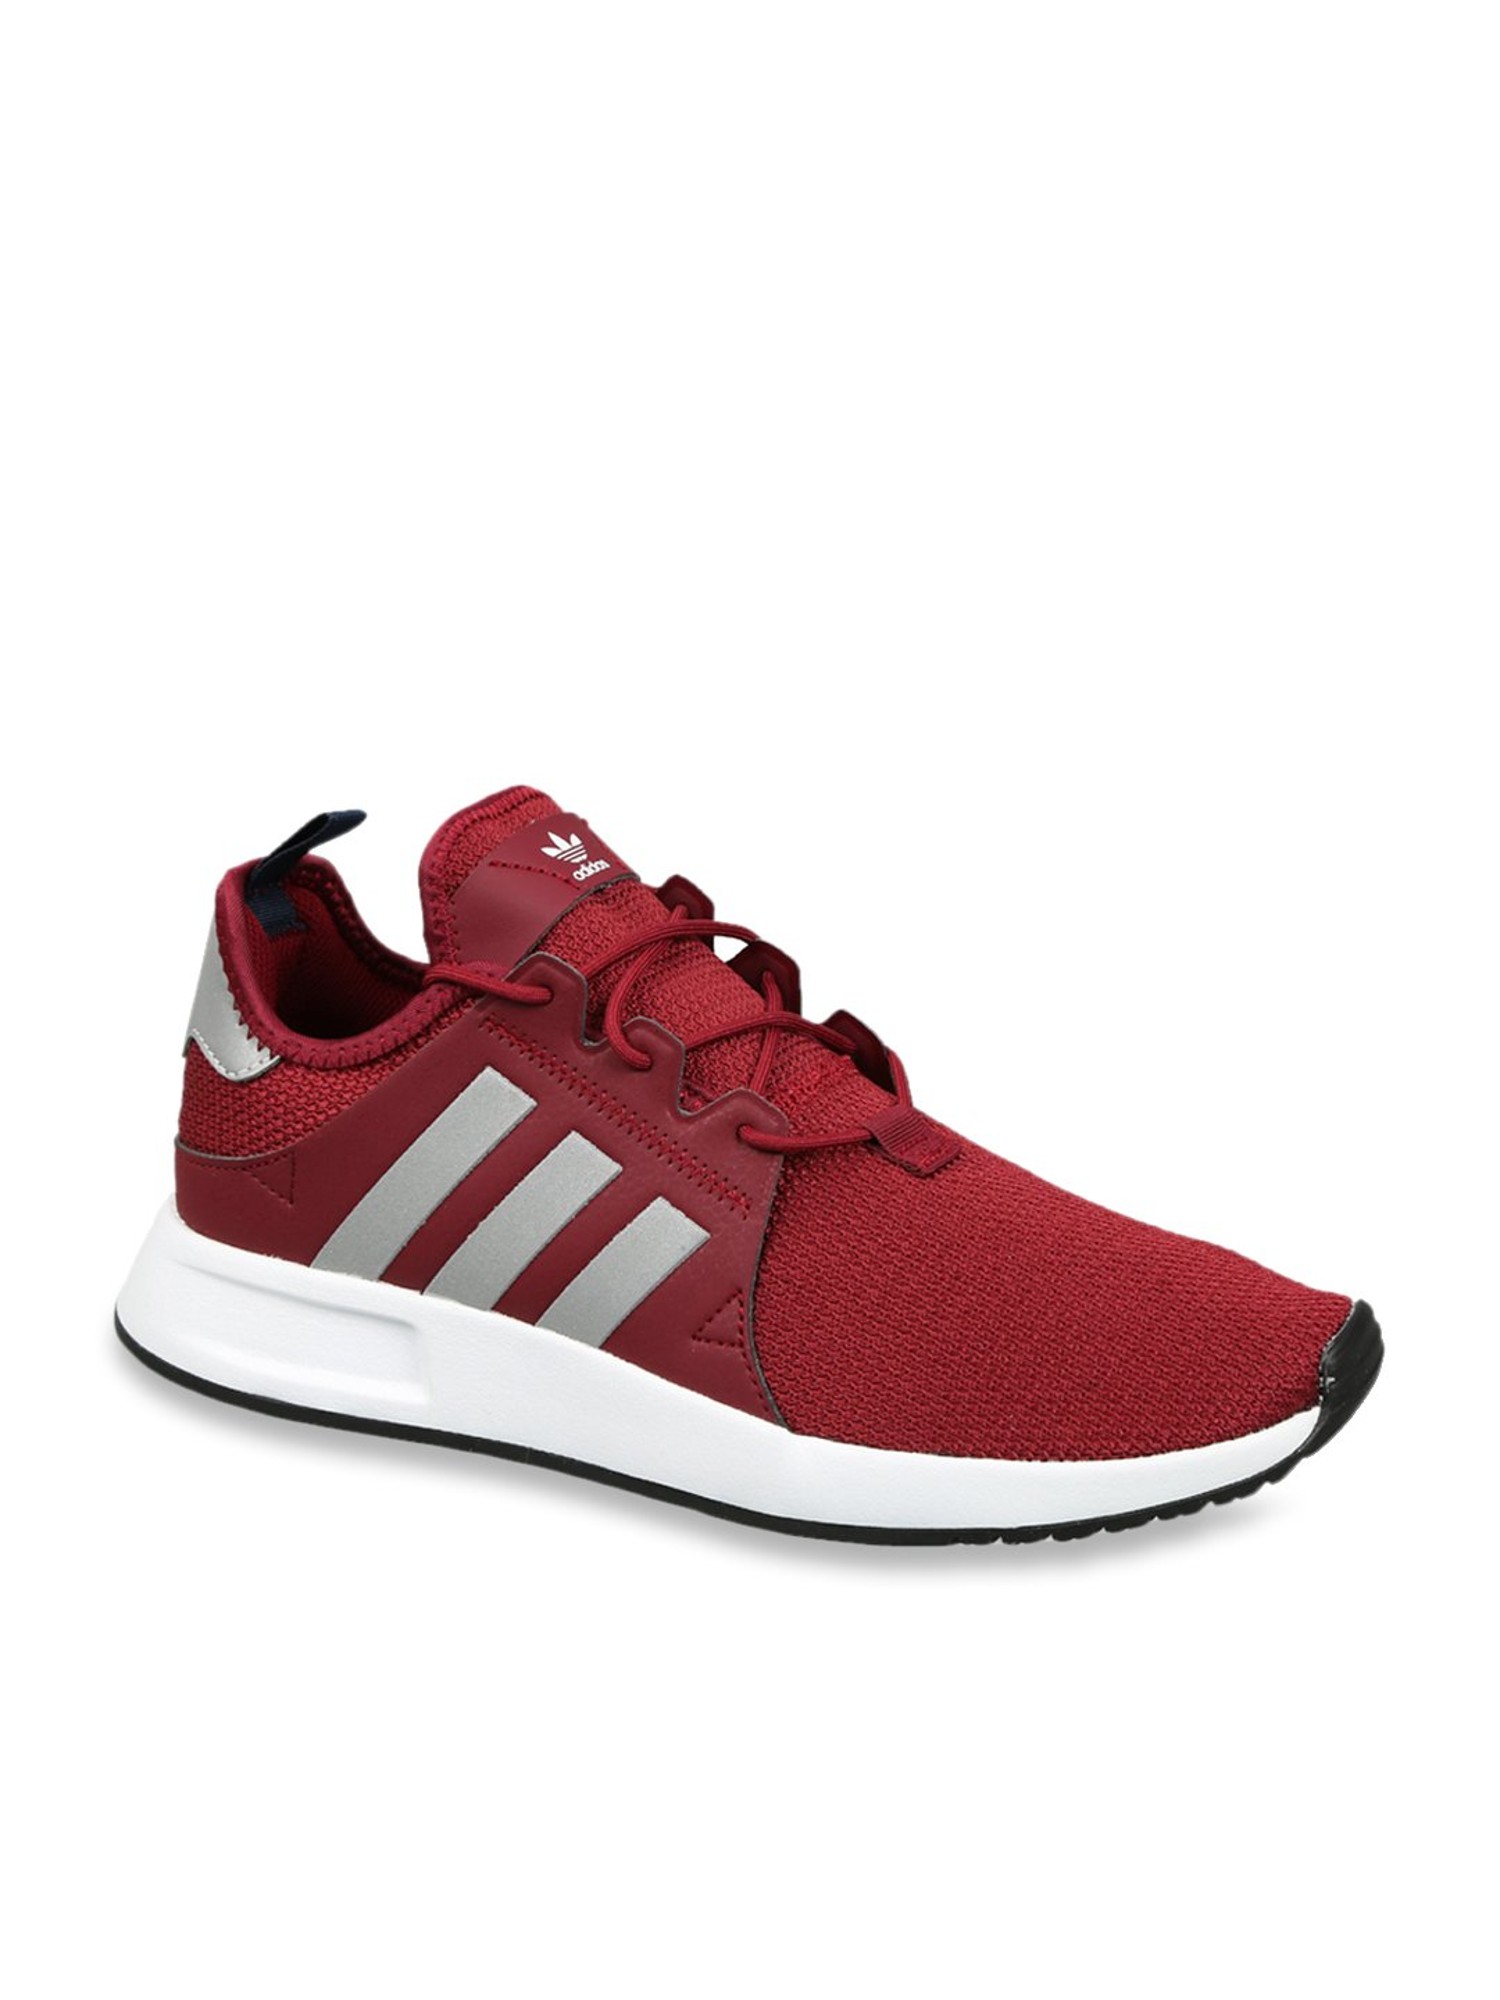 Buy Adidas Original X Red Sneakers for Men Best @ Tata CLiQ